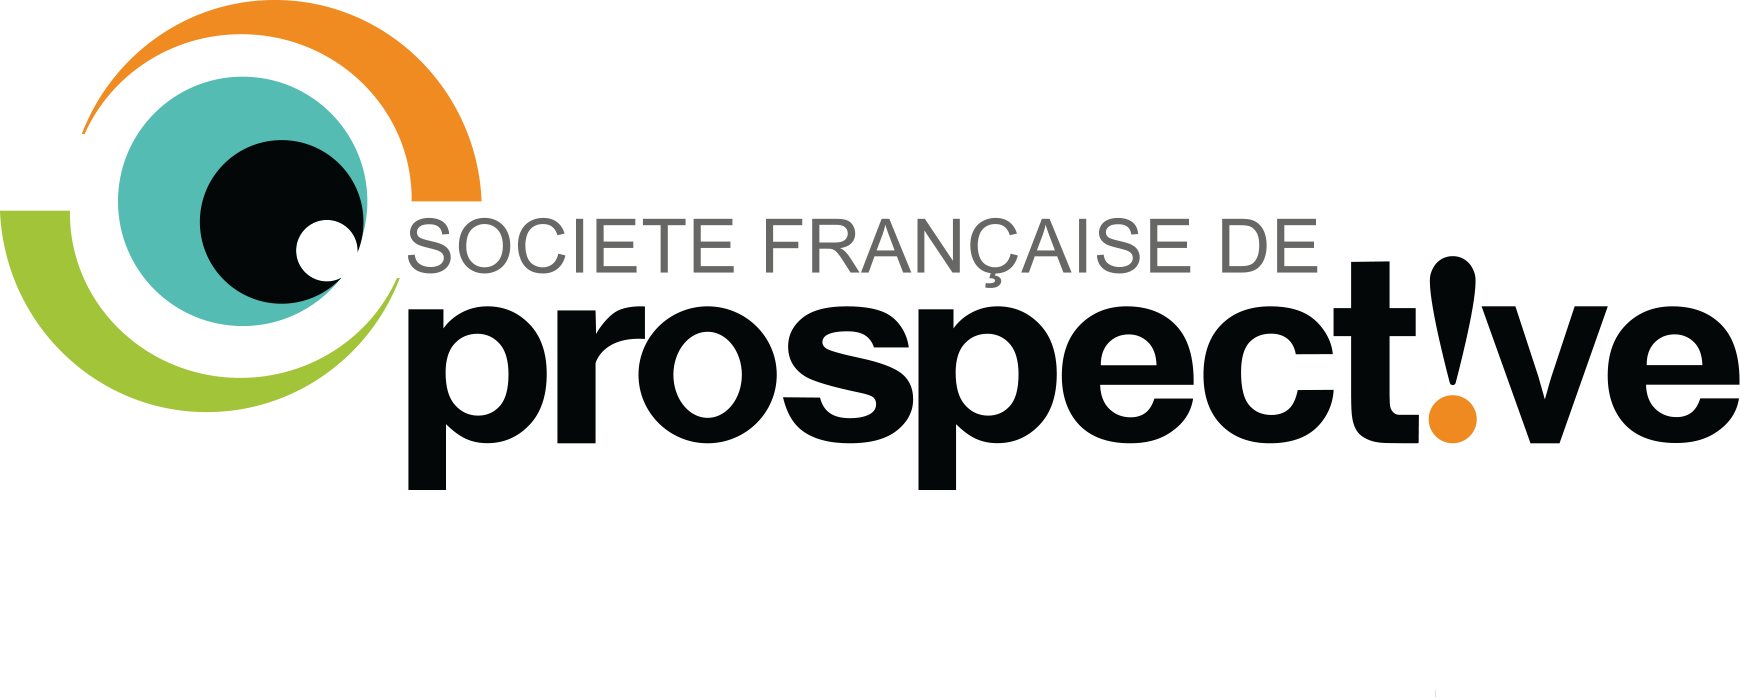 Société Française de Prospective